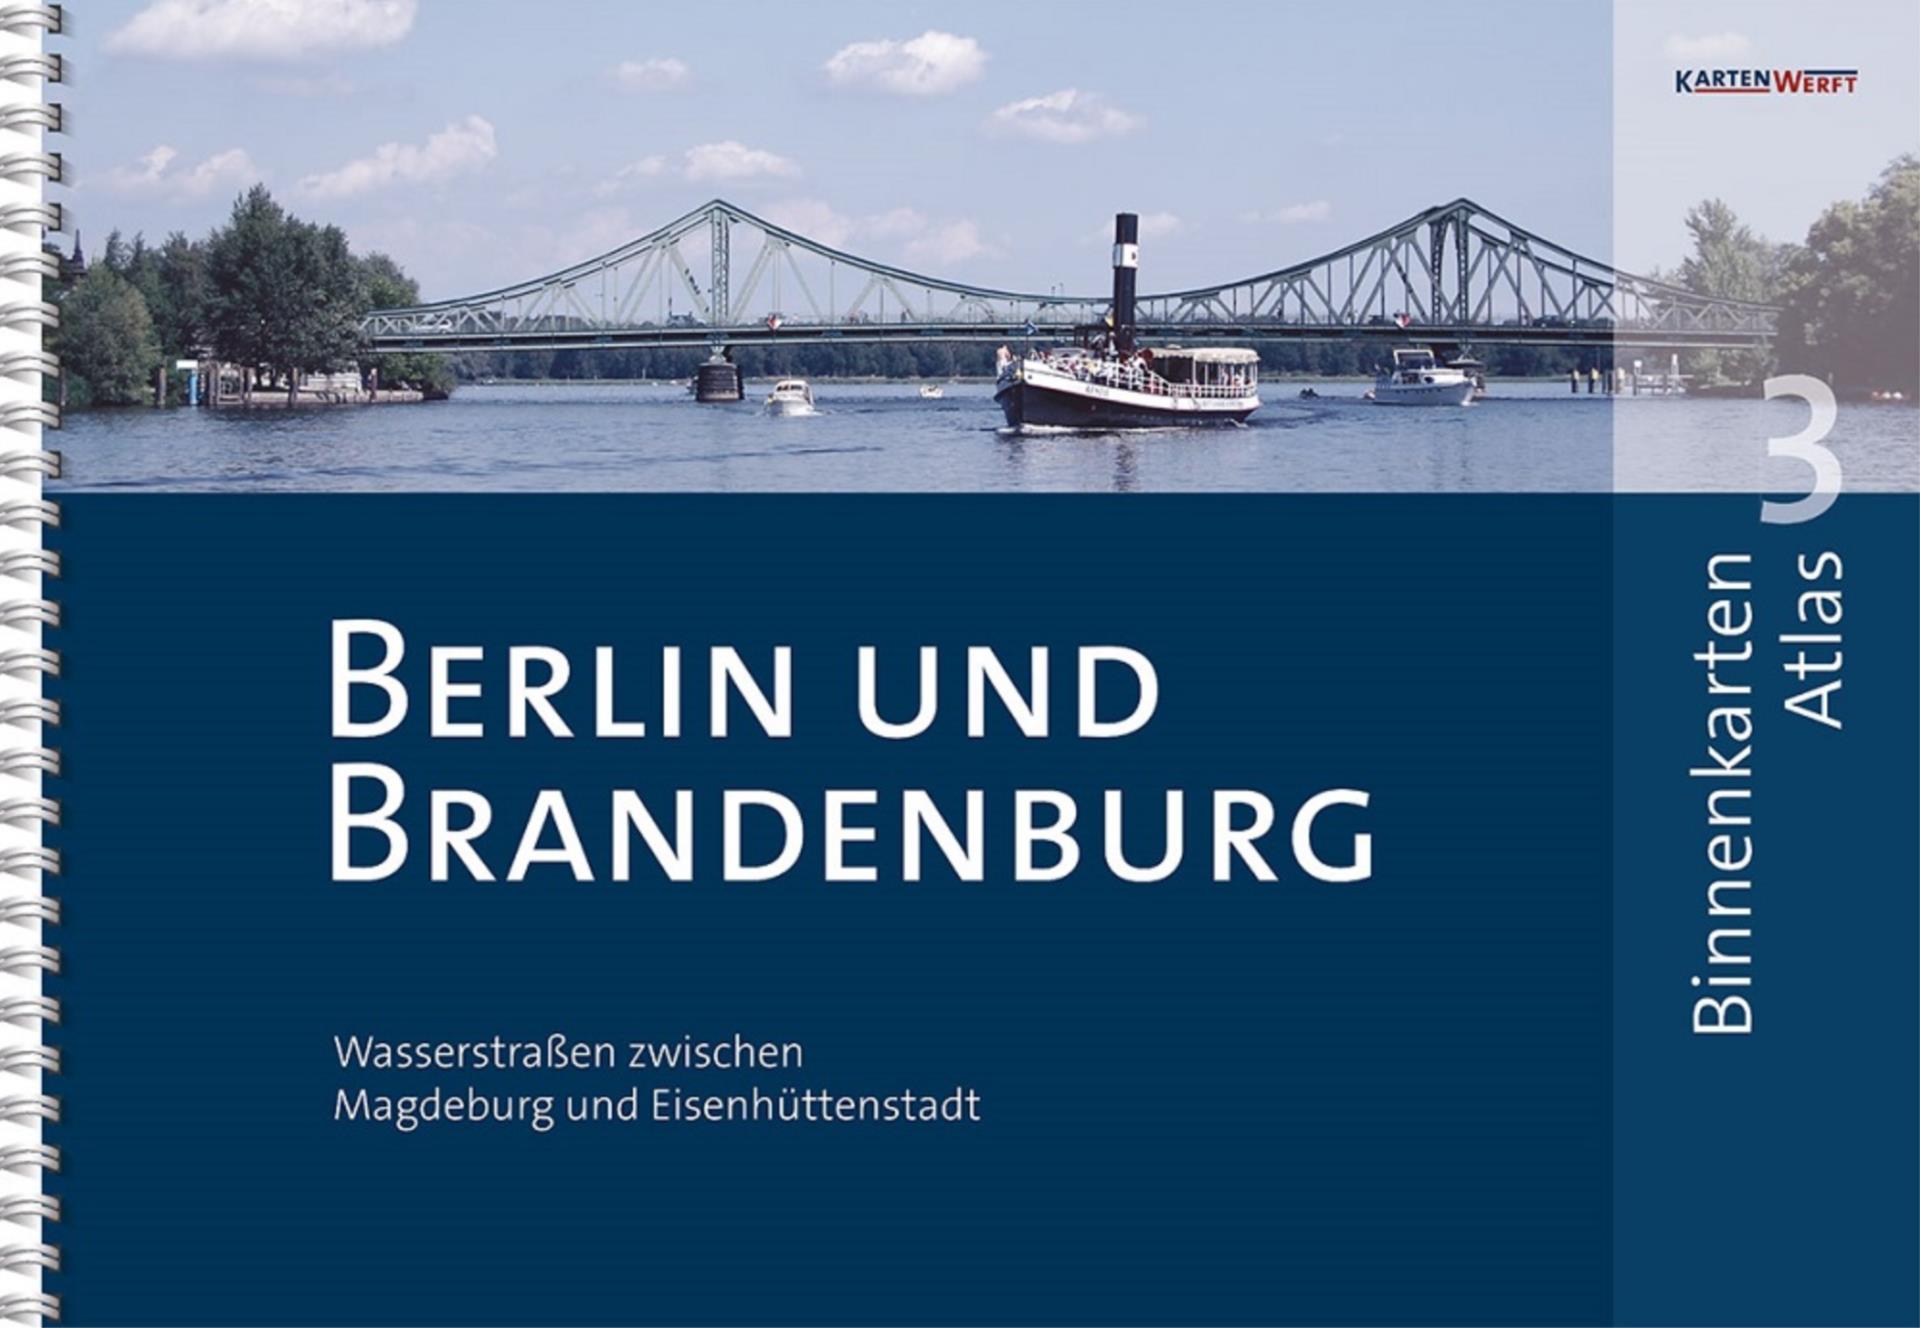 Kartenwerft Binnen Atlas 3, Berlin und Brandenburg